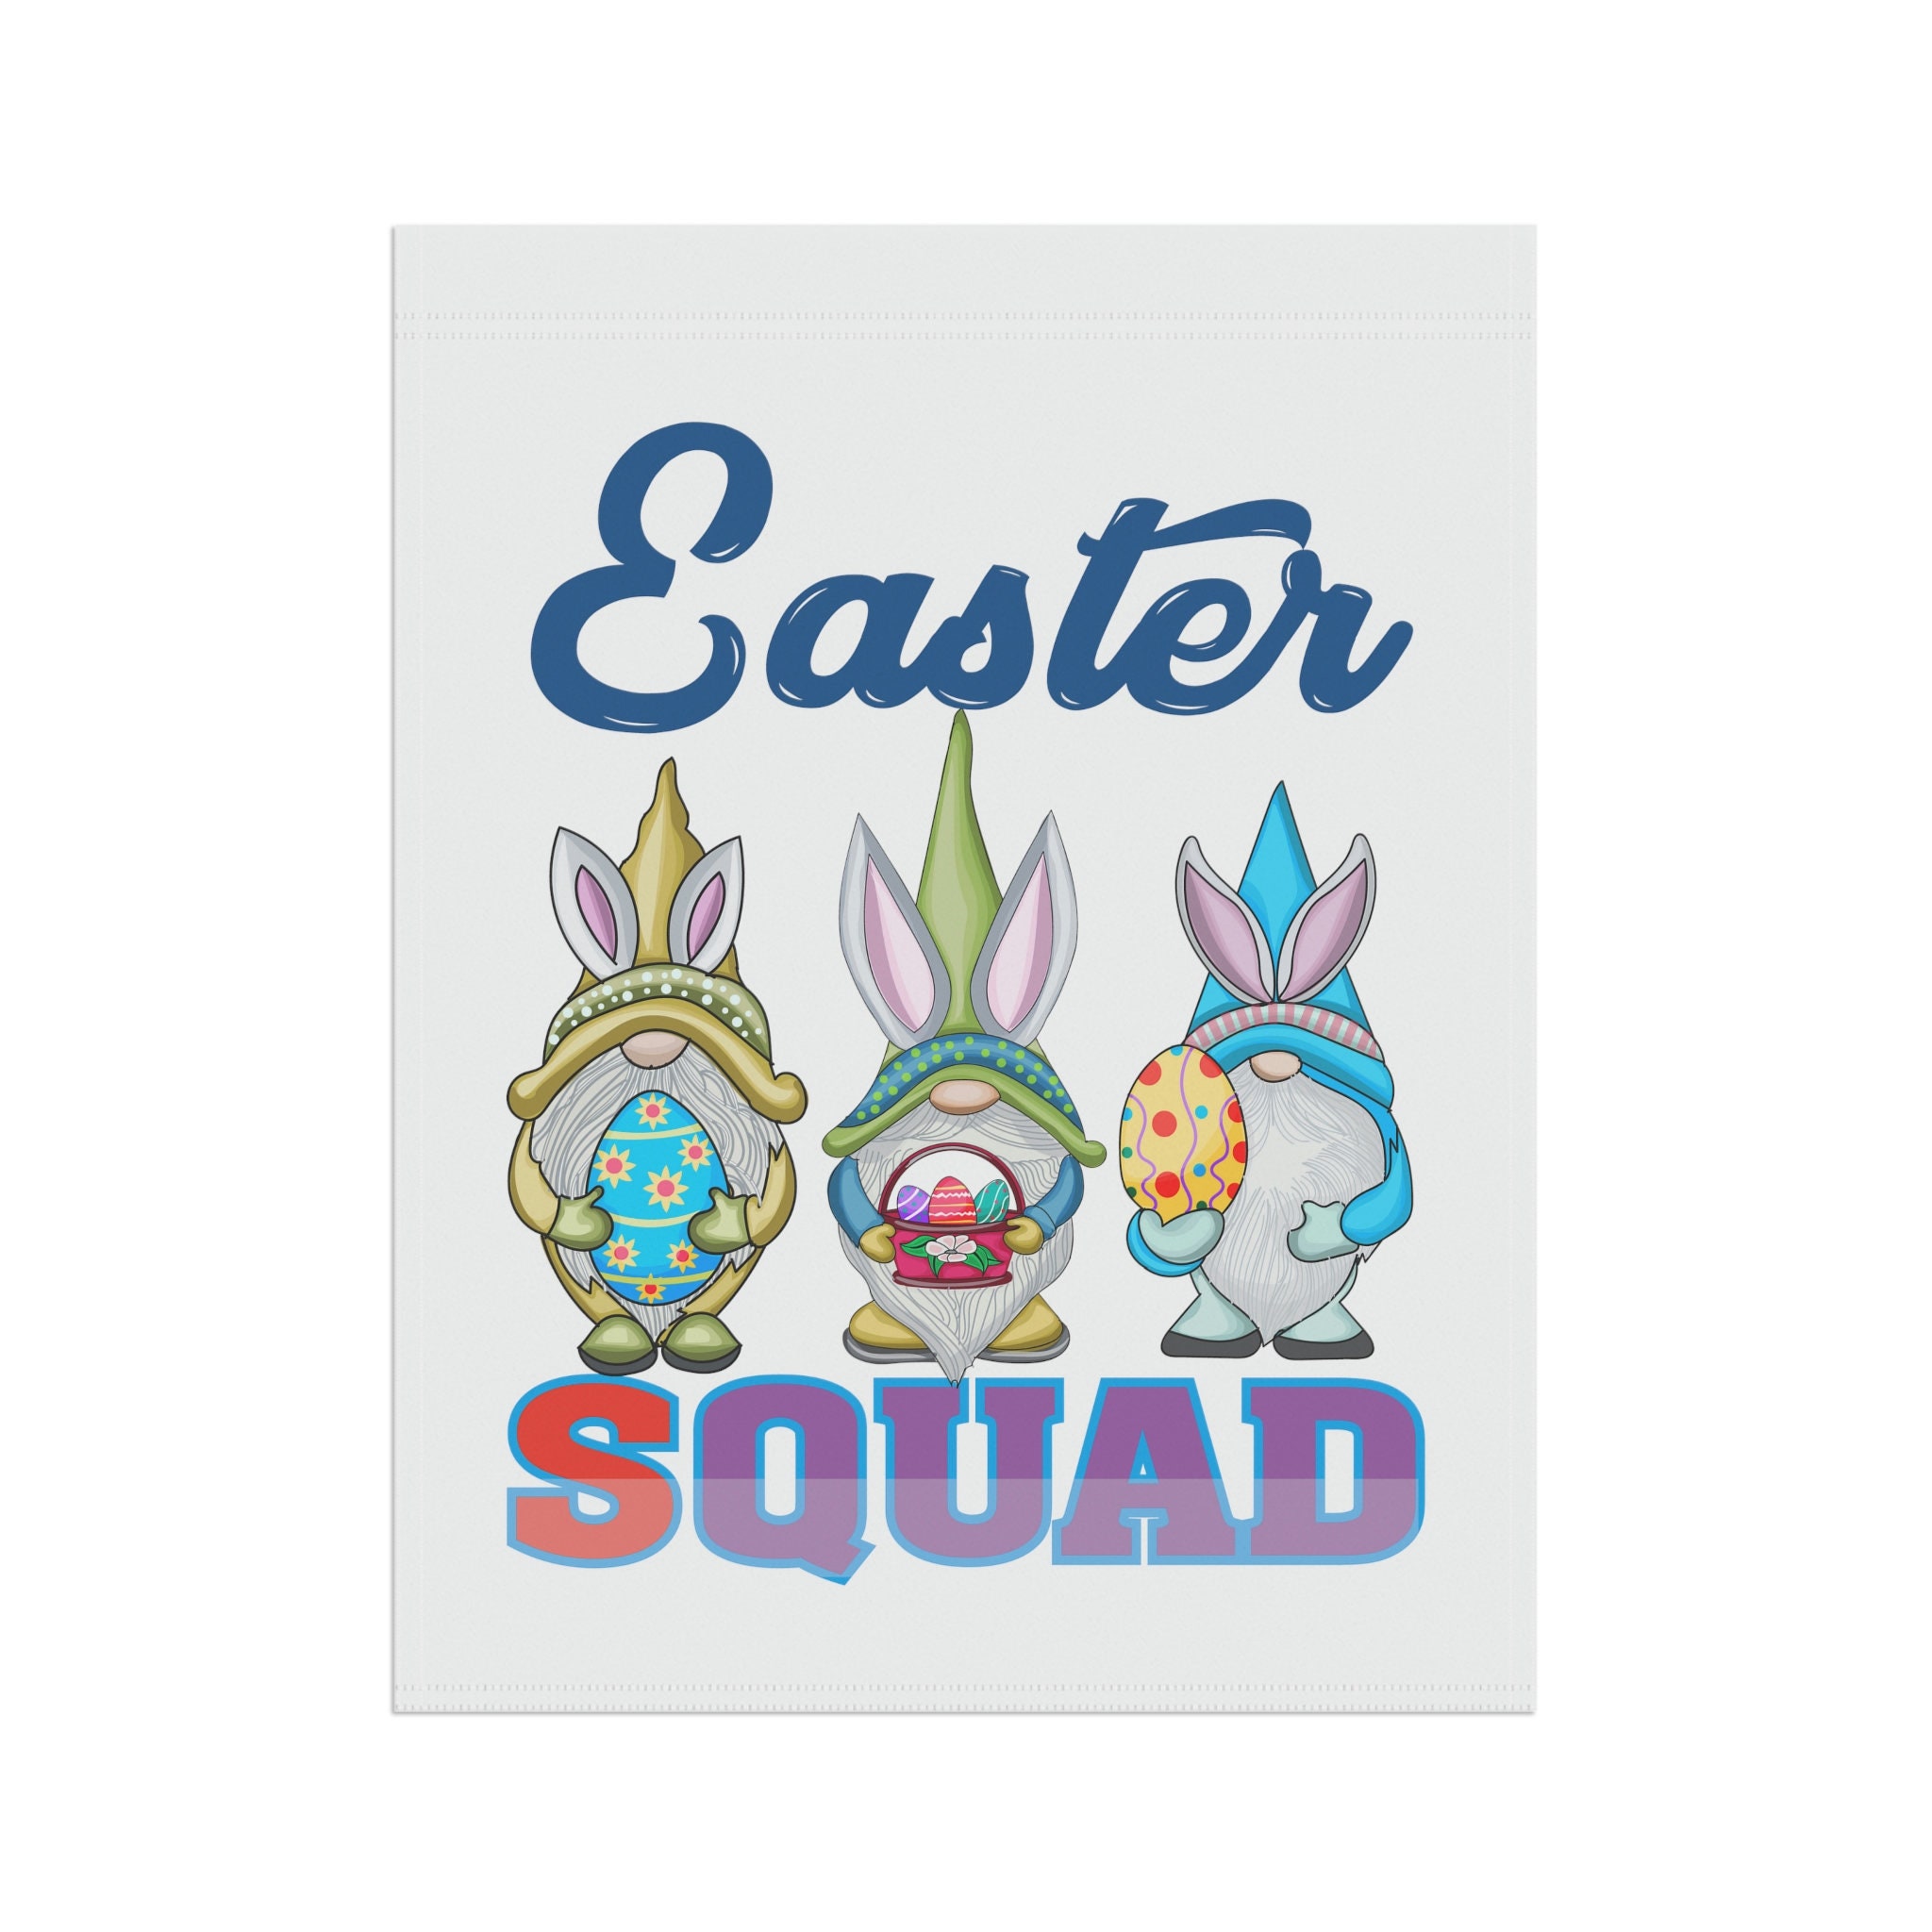 Easter Squad Flag, Easter Flag, Easter Decorations